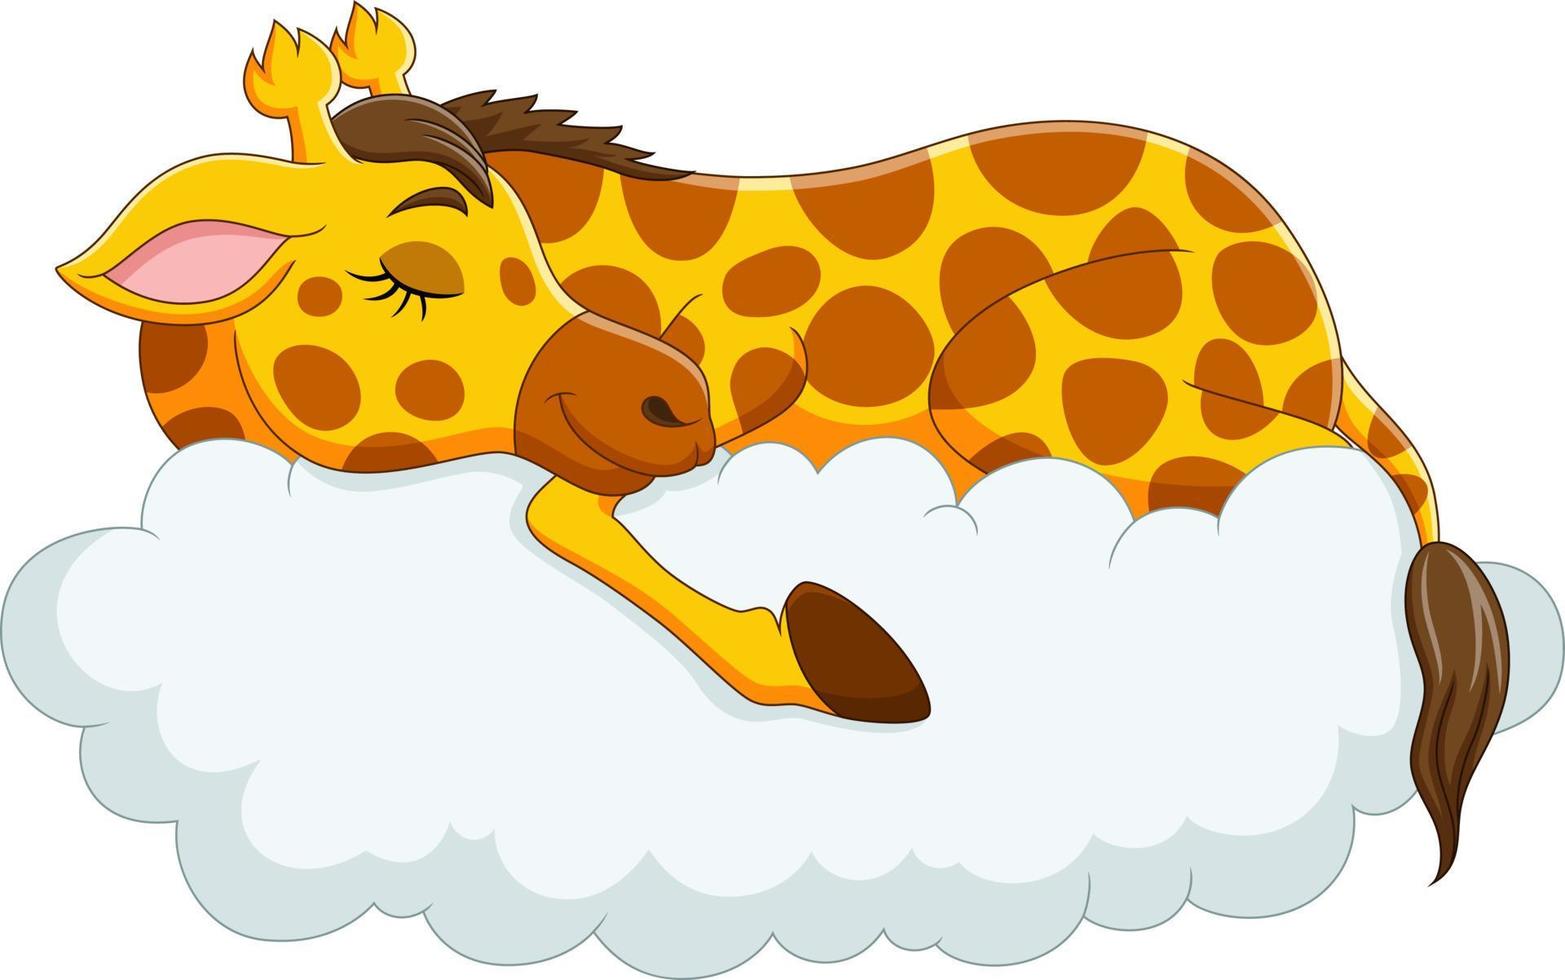 girafa engraçada dos desenhos animados dormindo nas nuvens vetor